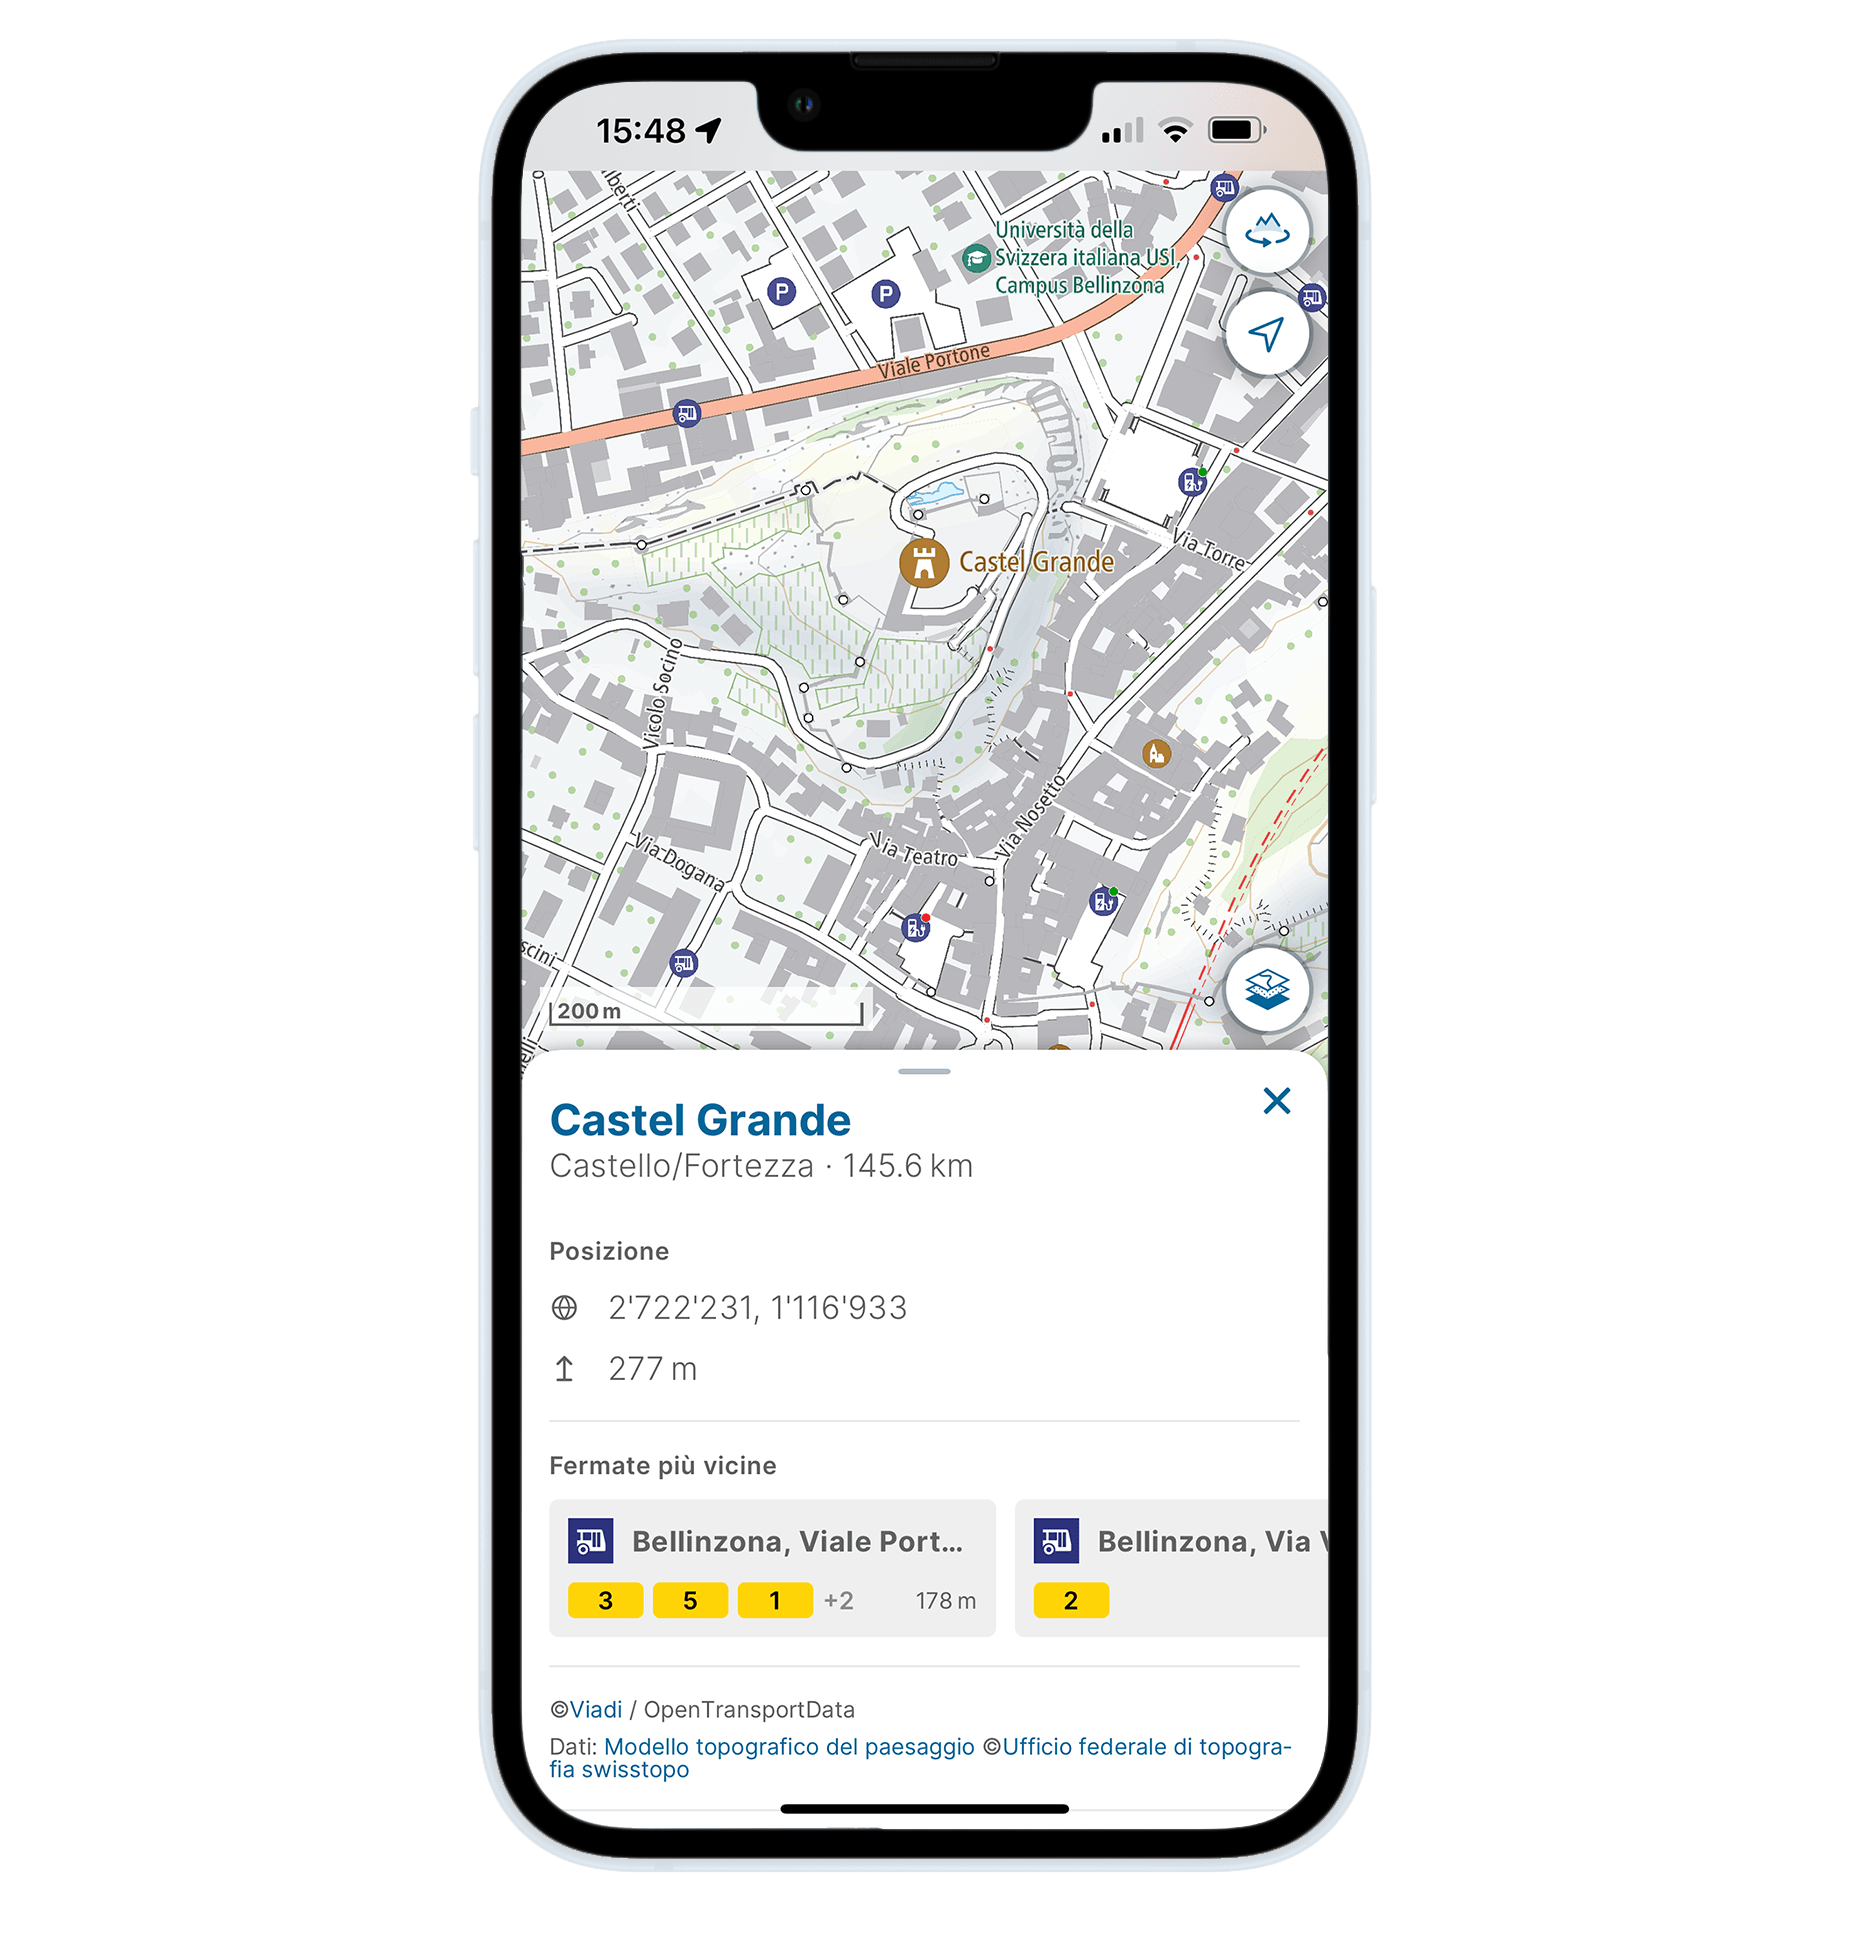 聯邦地繪局推出的應用程式將附加資訊 (例如距離興趣地最近的交通工具) 整合到了地圖之中。